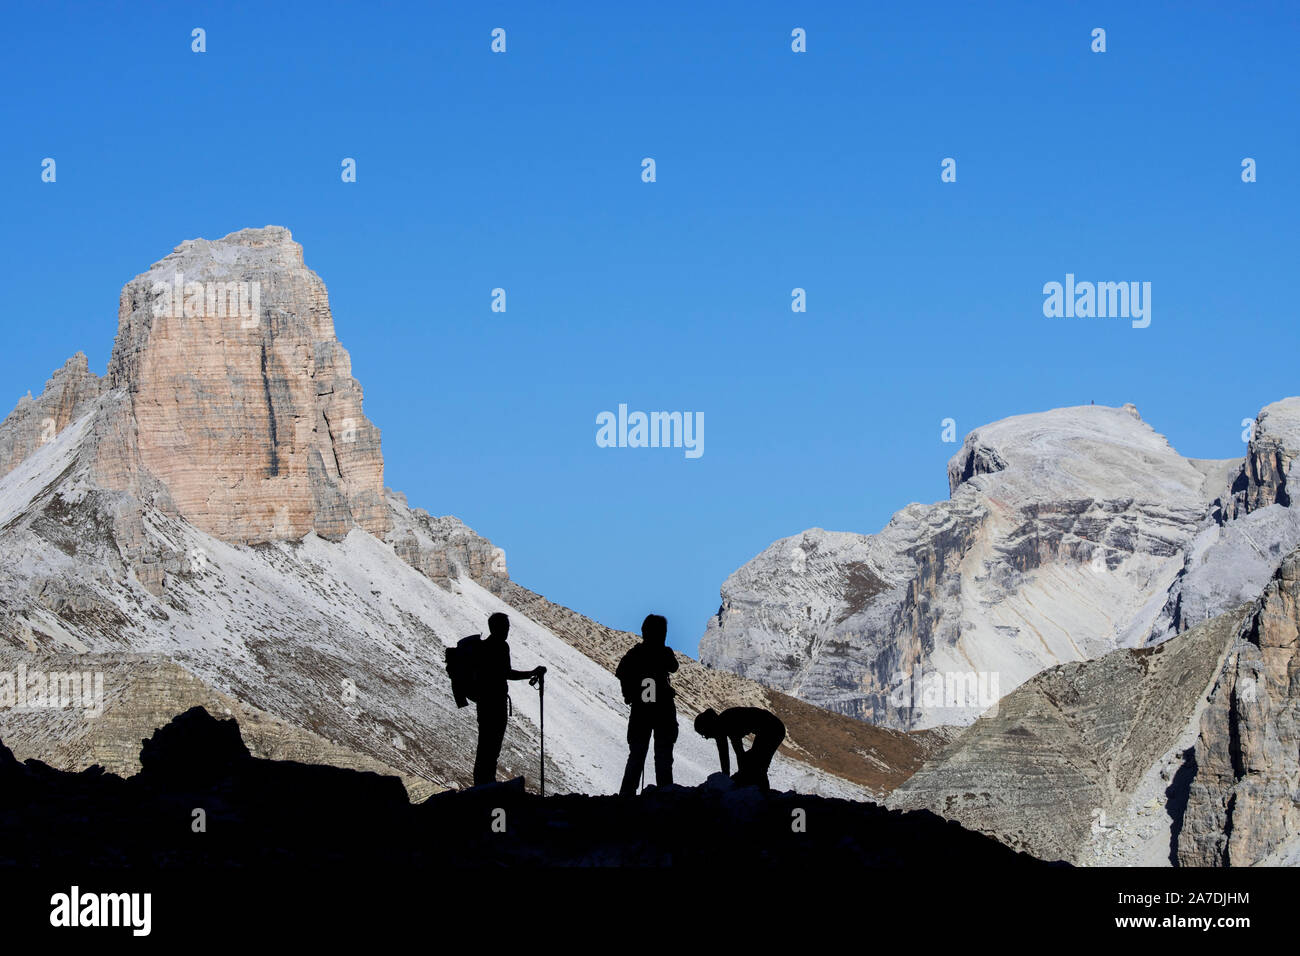 Trois alpinistes silhouette sur Torre dei Scarperi / Schwabenalpenkopf, Sexten Dolomites, Parco Naturale Tre Cime, le Tyrol du Sud, Italie Banque D'Images